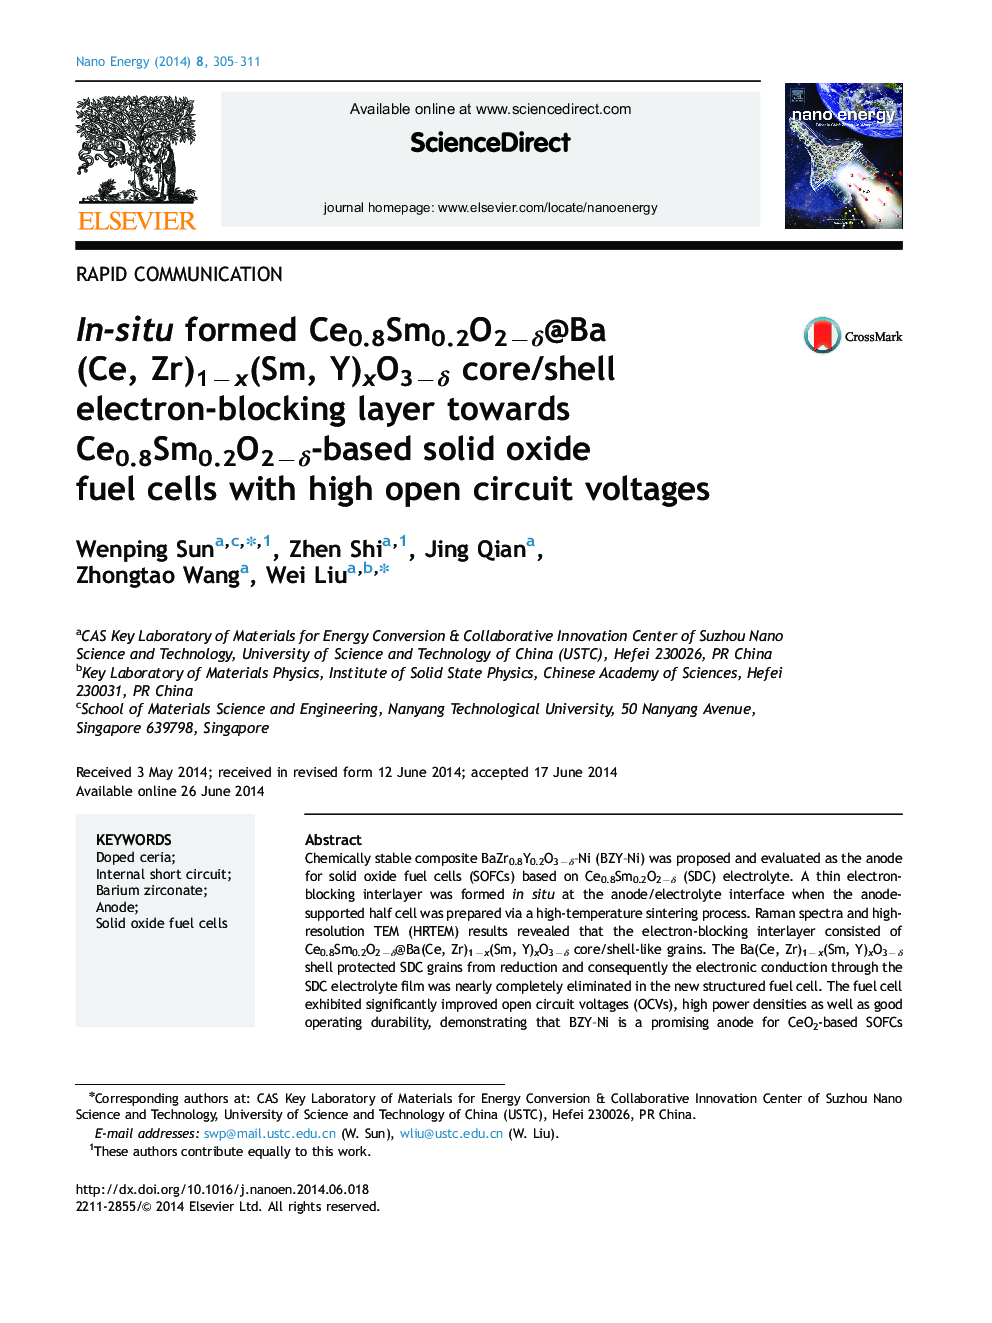 In-situ formed Ce0.8Sm0.2O2âÎ´@Ba(Ce, Zr)1âx(Sm, Y)xO3âÎ´ core/shell electron-blocking layer towards Ce0.8Sm0.2O2âÎ´-based solid oxide fuel cells with high open circuit voltages